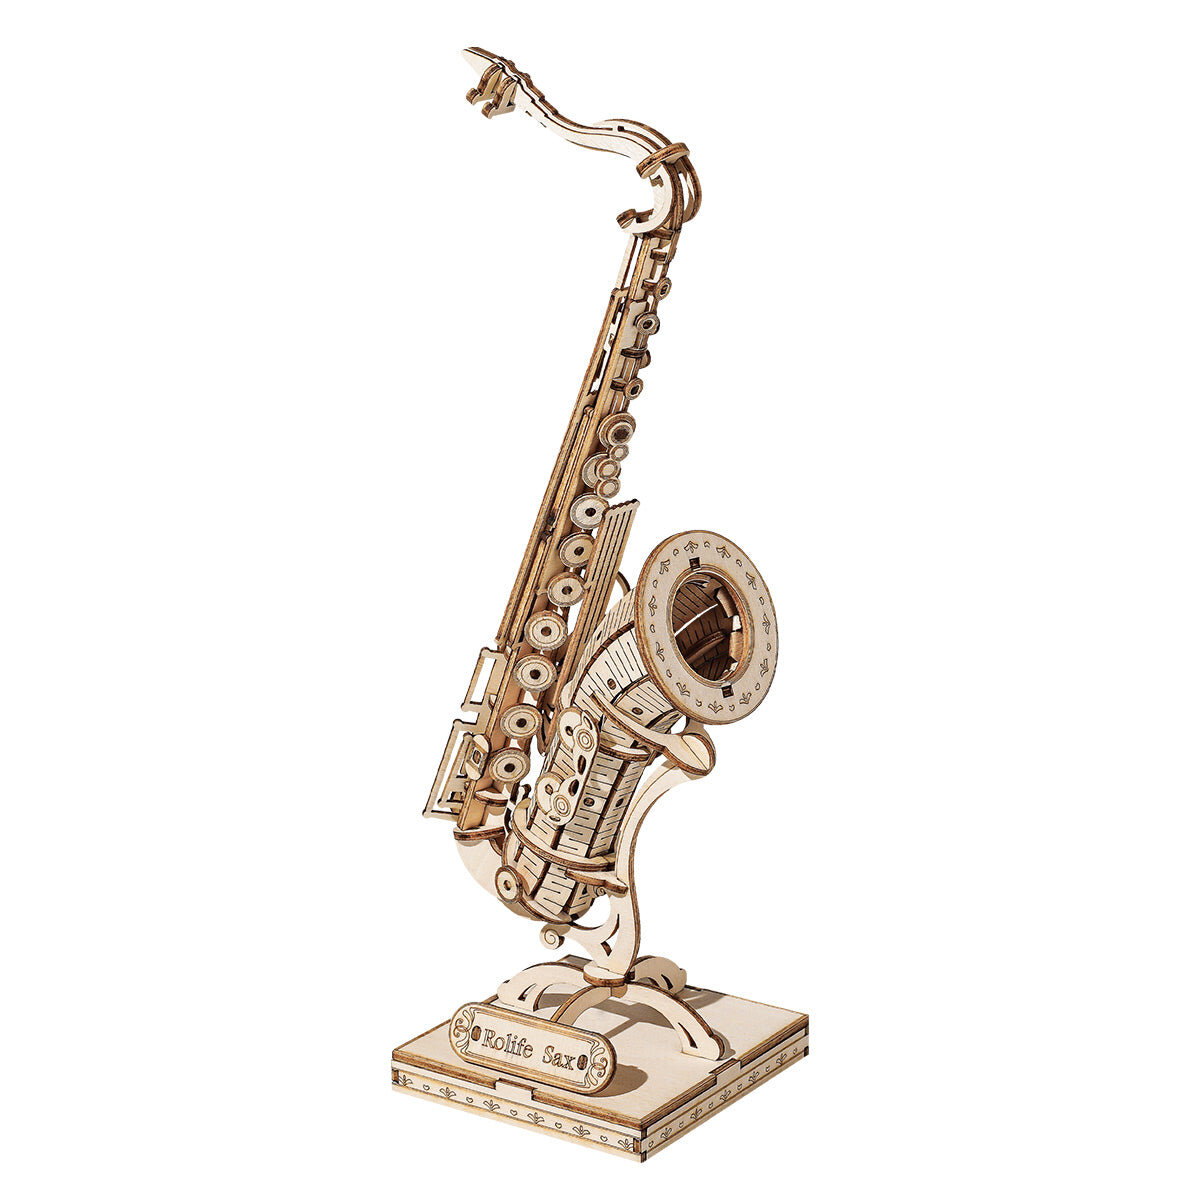 Ξύλινο τρισδιάστατο παζλ - Saxophone Rolife TG309